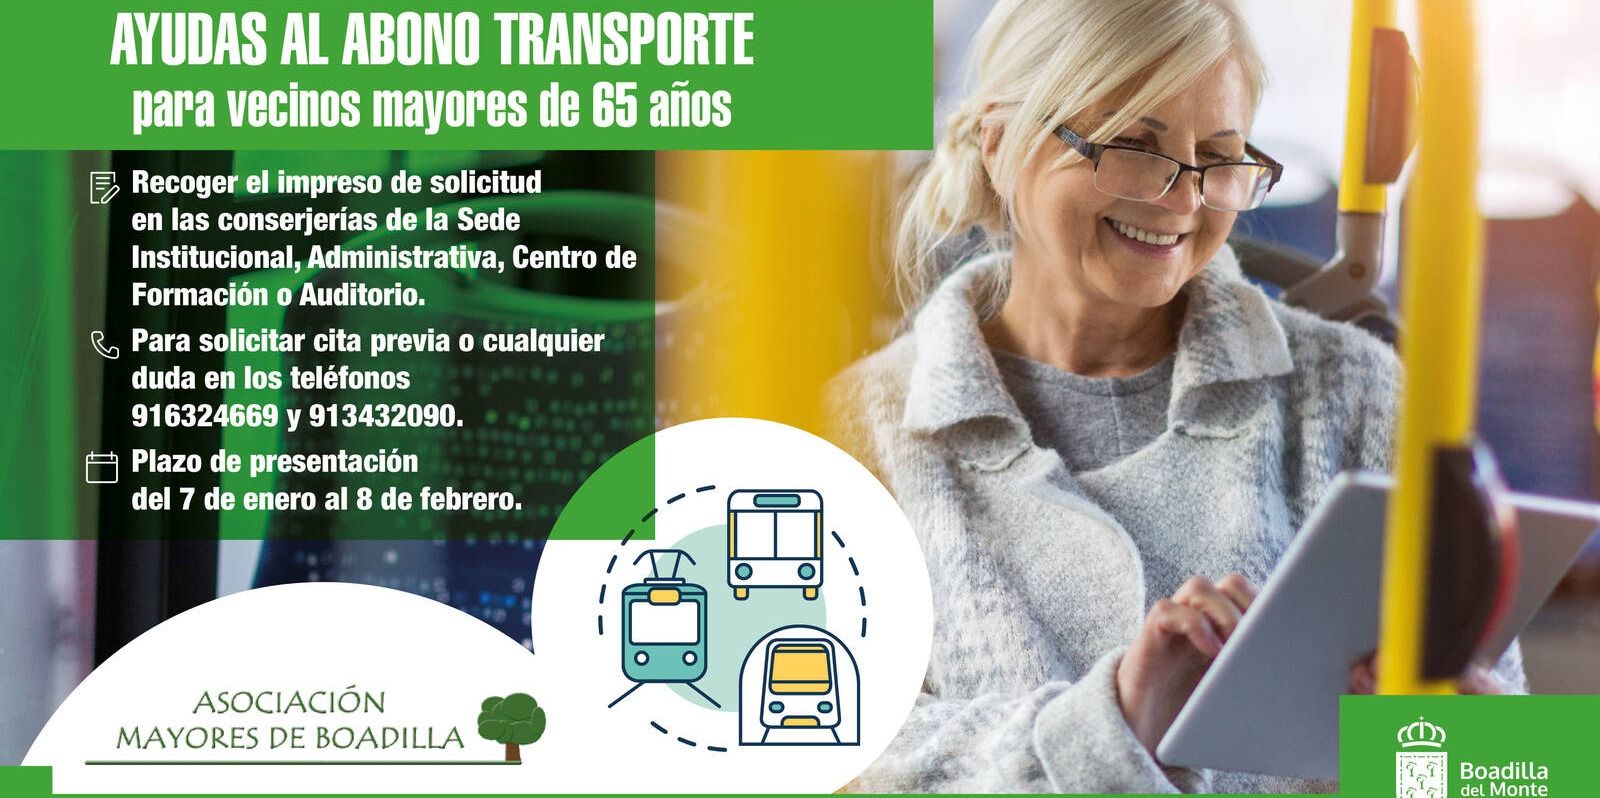 El Ayuntamiento de Boadilla amplía el plazo de solicitud de la ayuda al abono transporte para mayores de 65 años